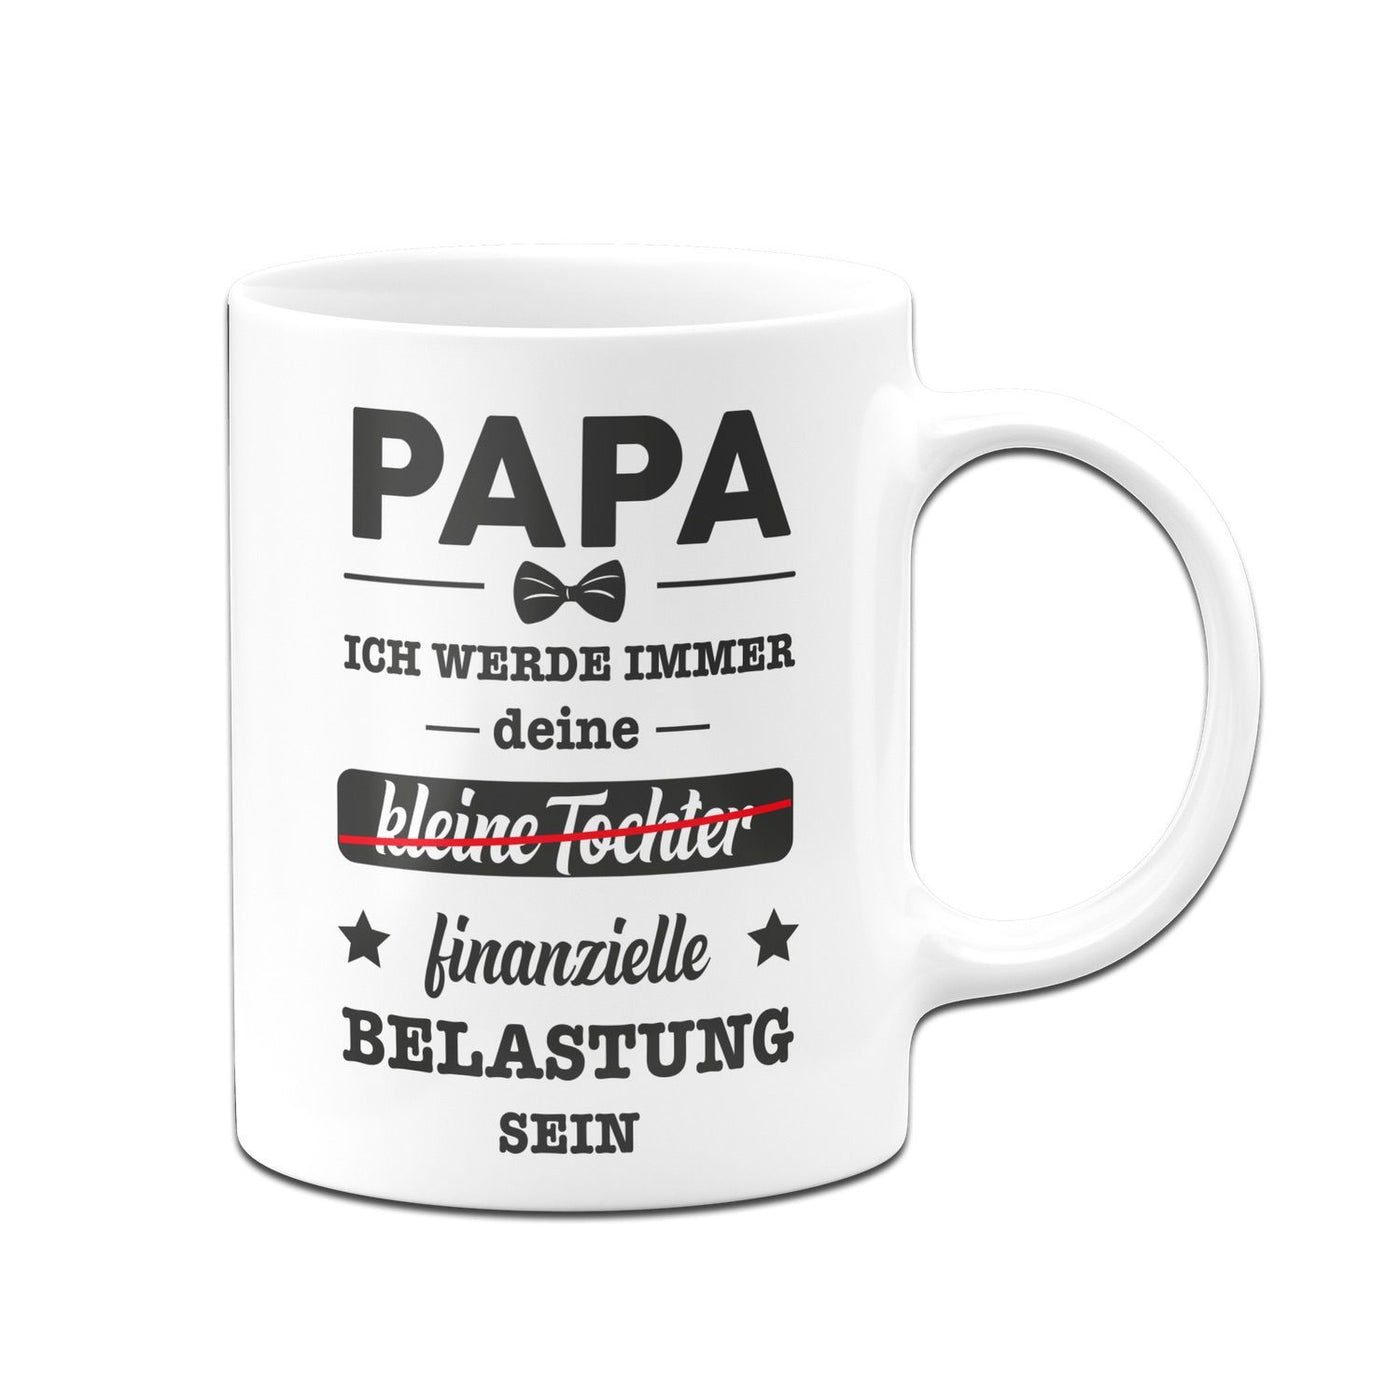 Bild: Tasse - Papa Ich werde immer deine kleine (Tochter) finanzielle Belastung sein Geschenkidee